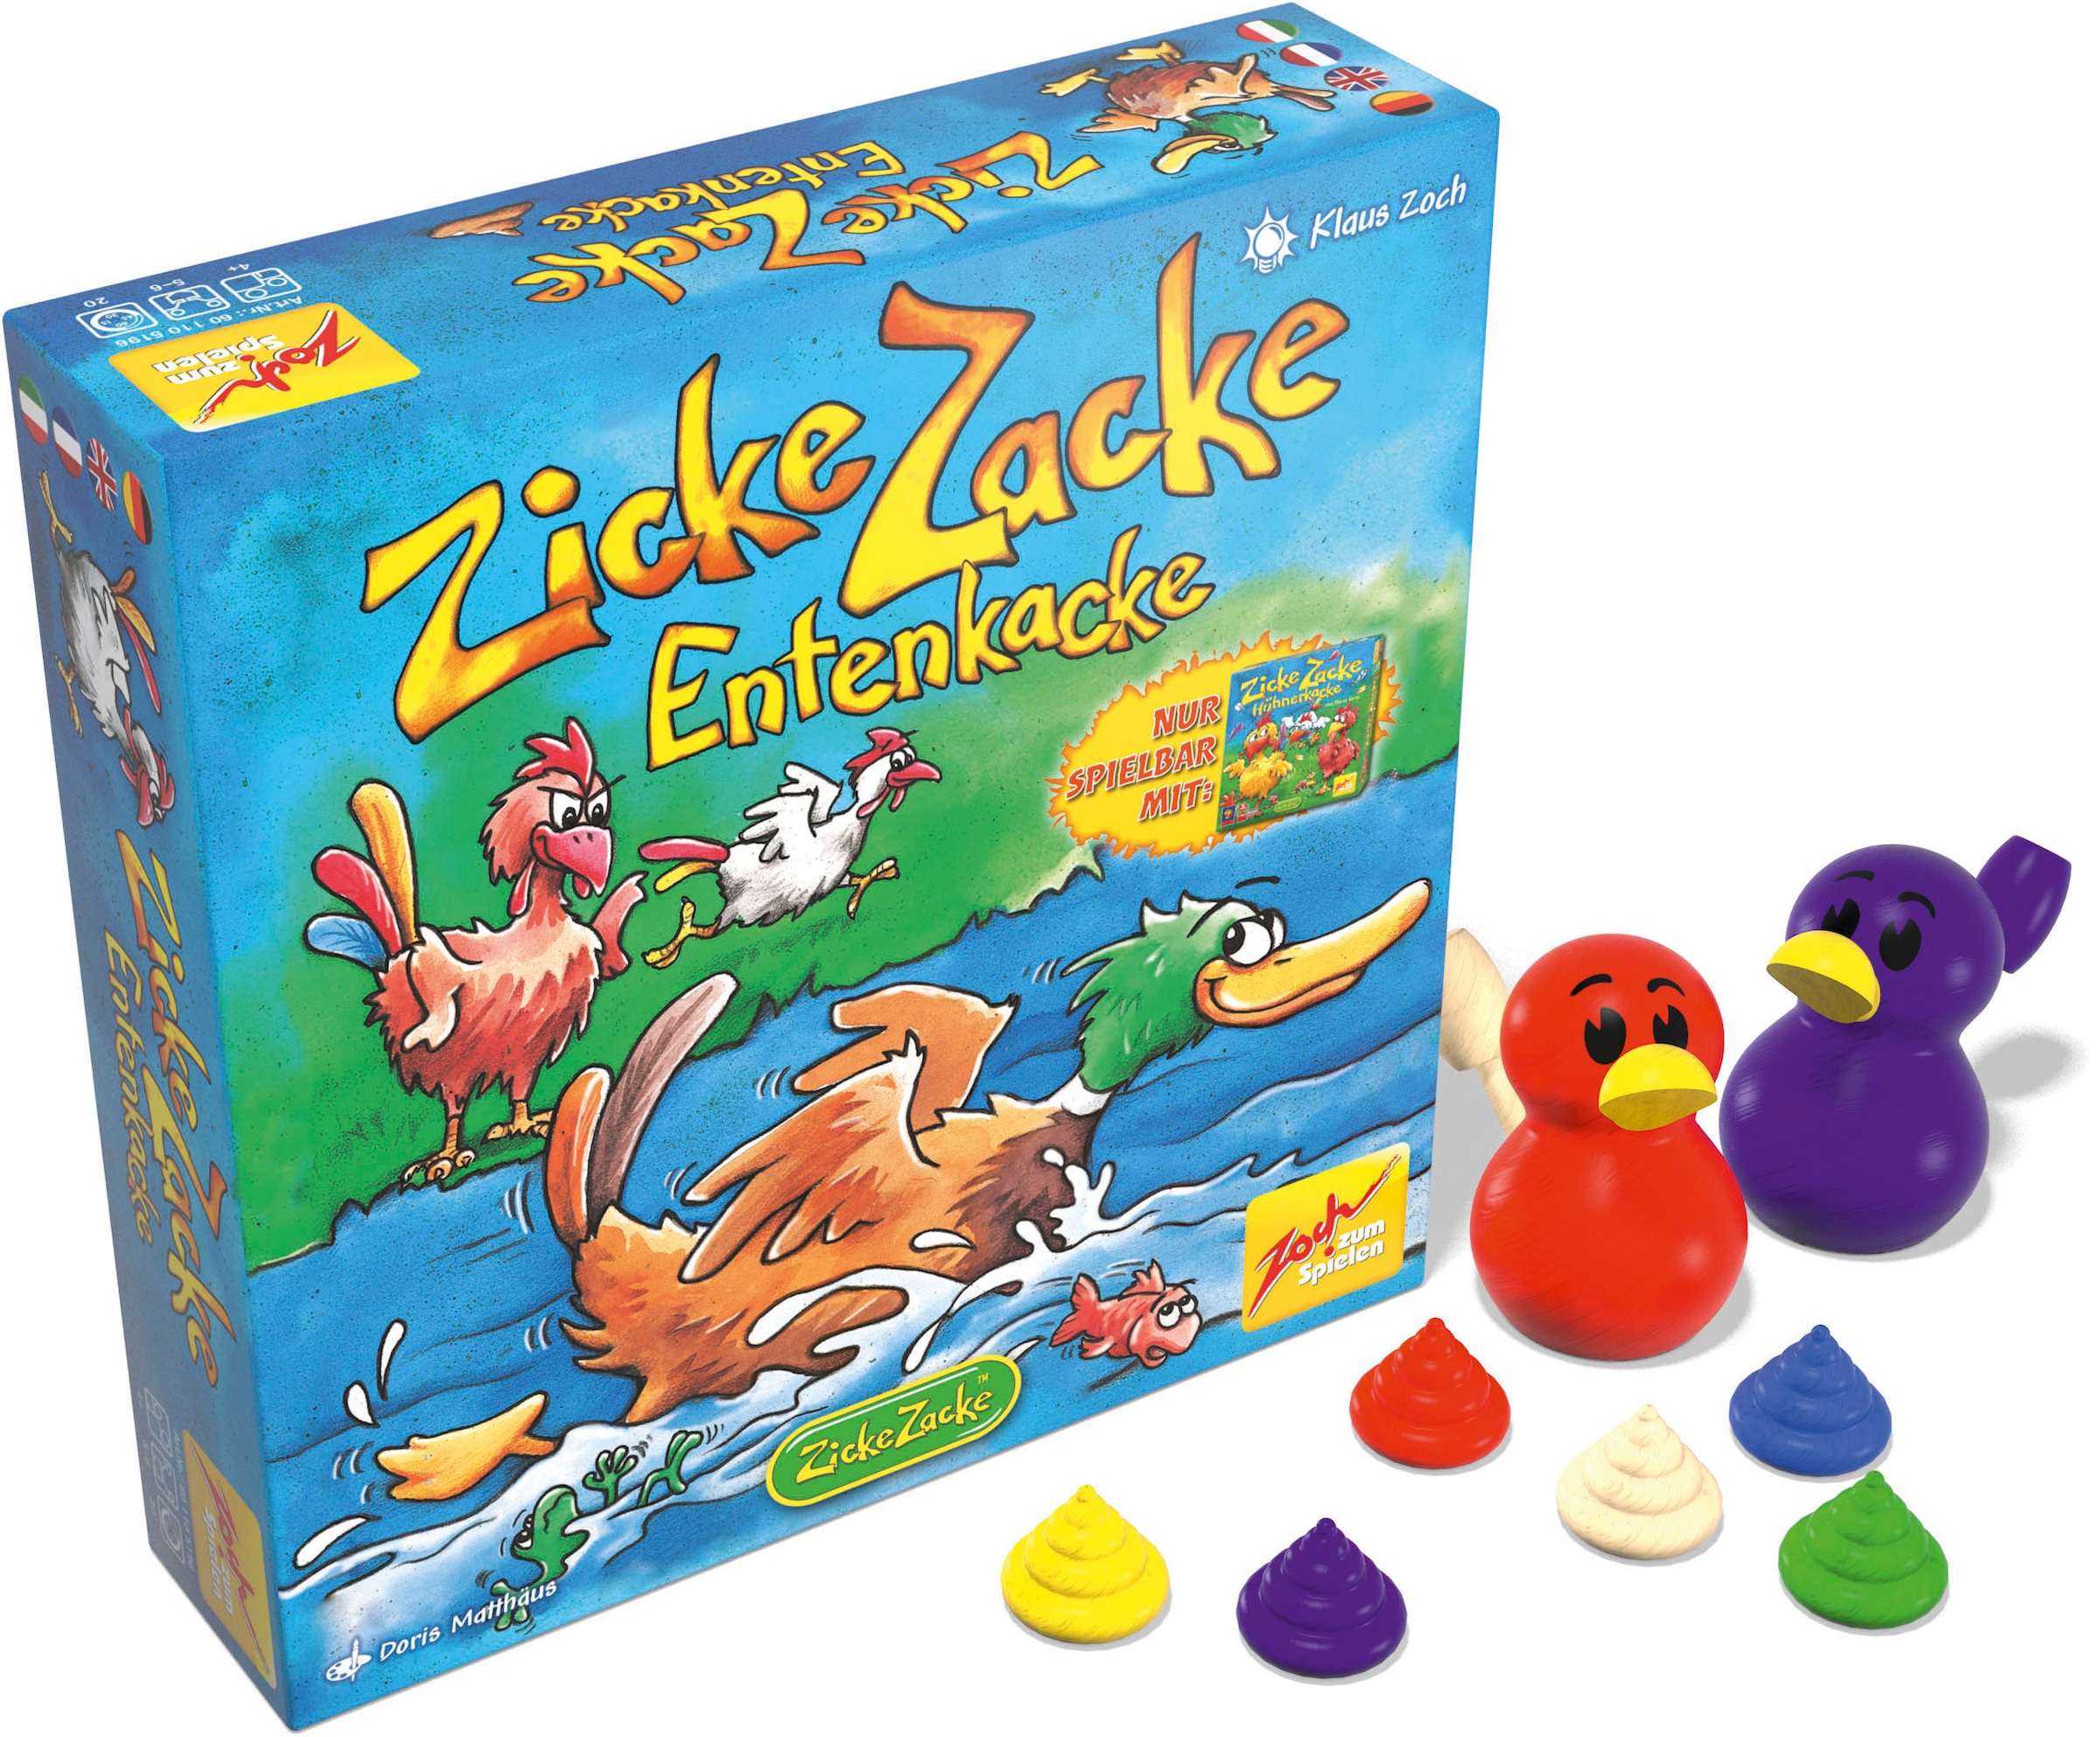 Zoch Spiel »Zicke Zacke Entenkacke«, Made in Germany